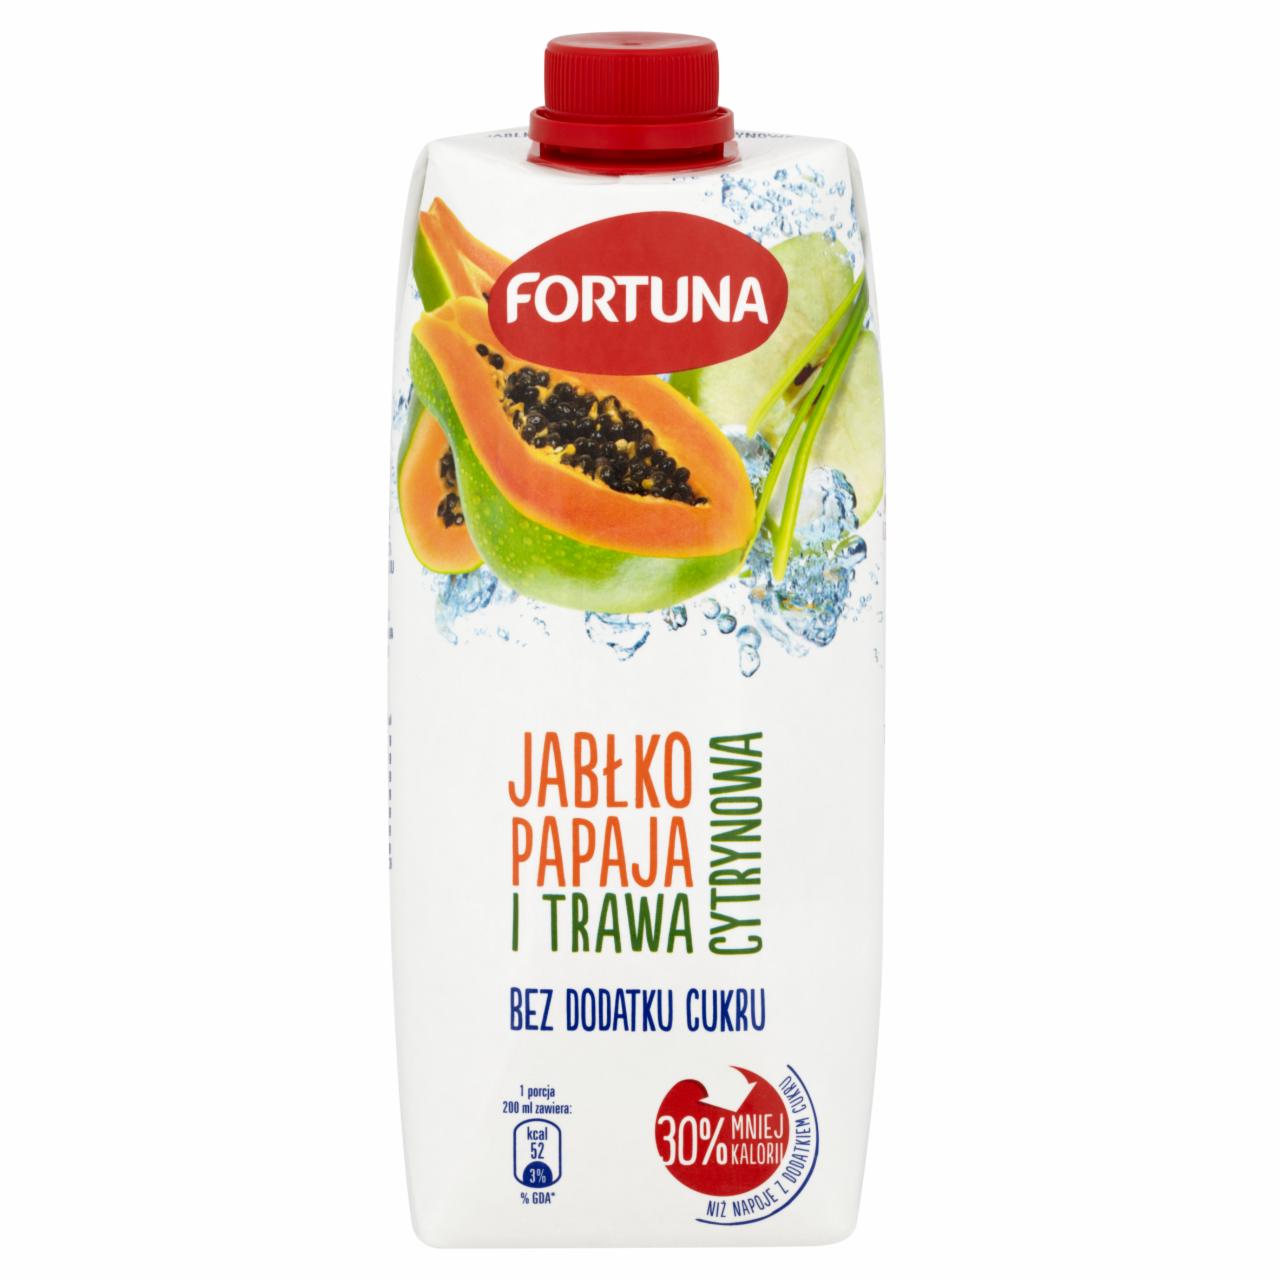 Zdjęcia - Fortuna Jabłko papaja i trawa cytrynowa Napój 500 ml